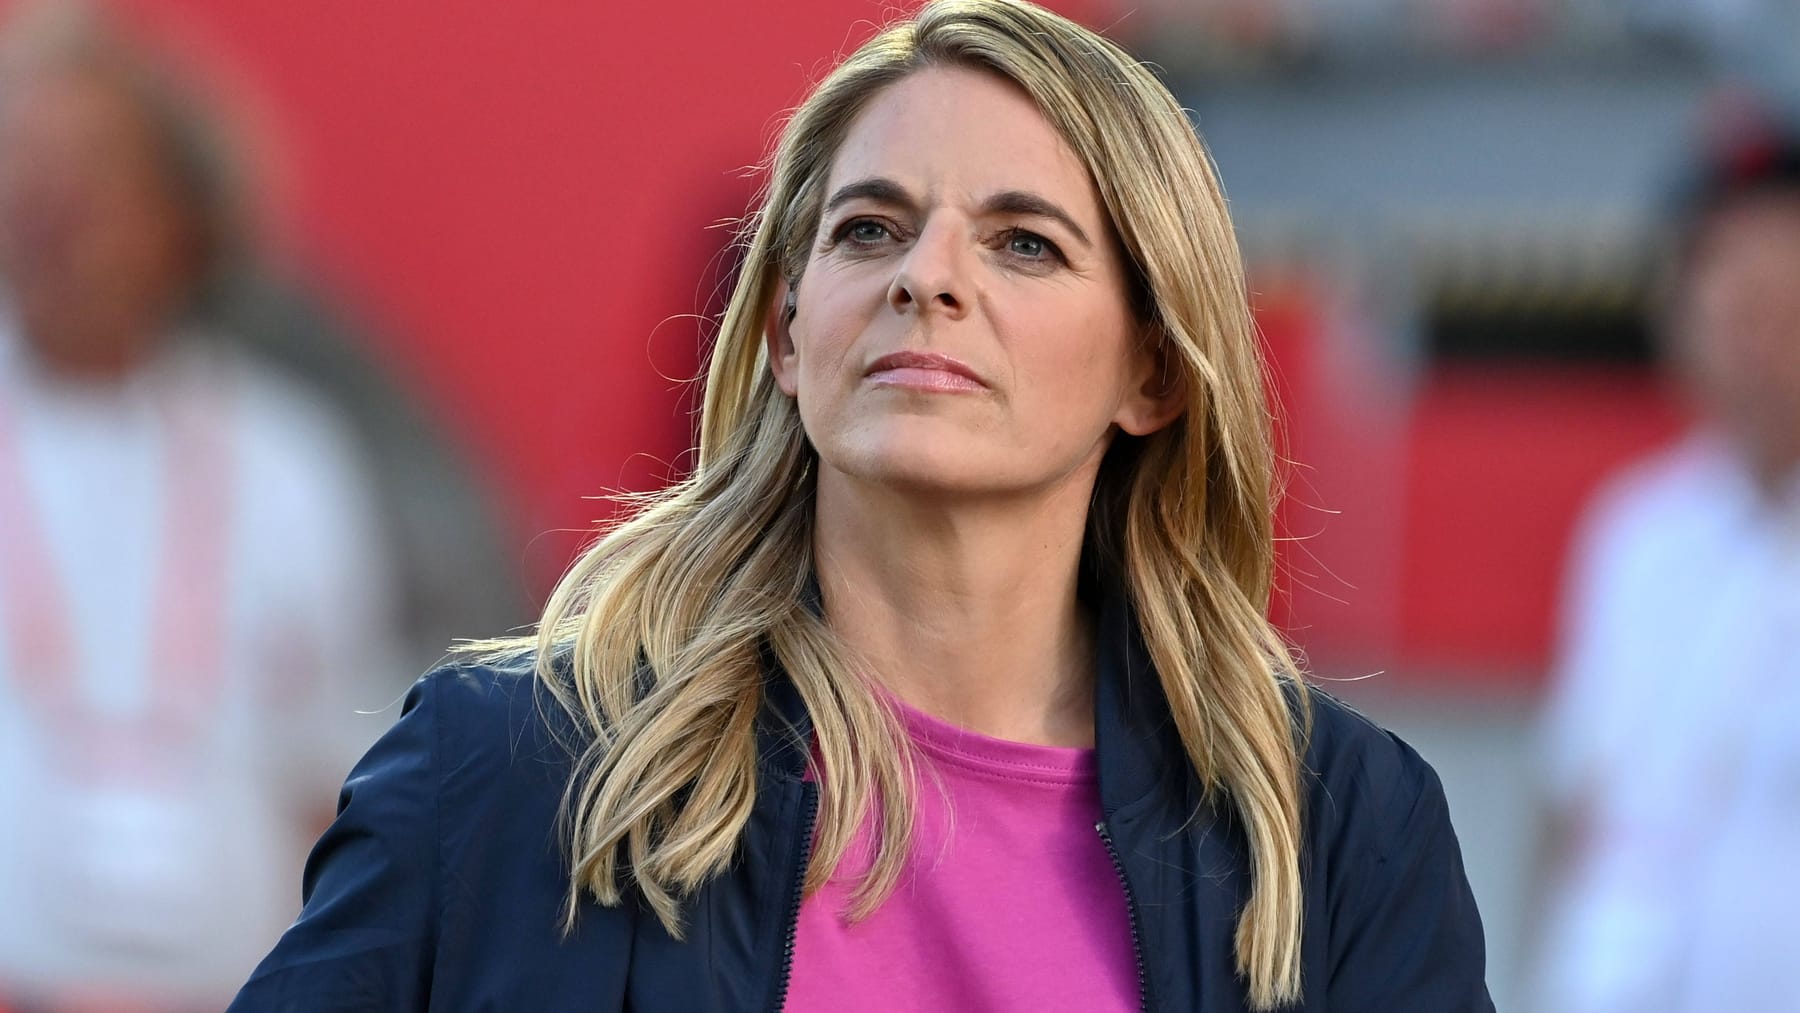 Piłka nożna kobiet: Była mistrzyni świata Kunzer zostaje dyrektorem Niemieckiego Związku Piłki Nożnej